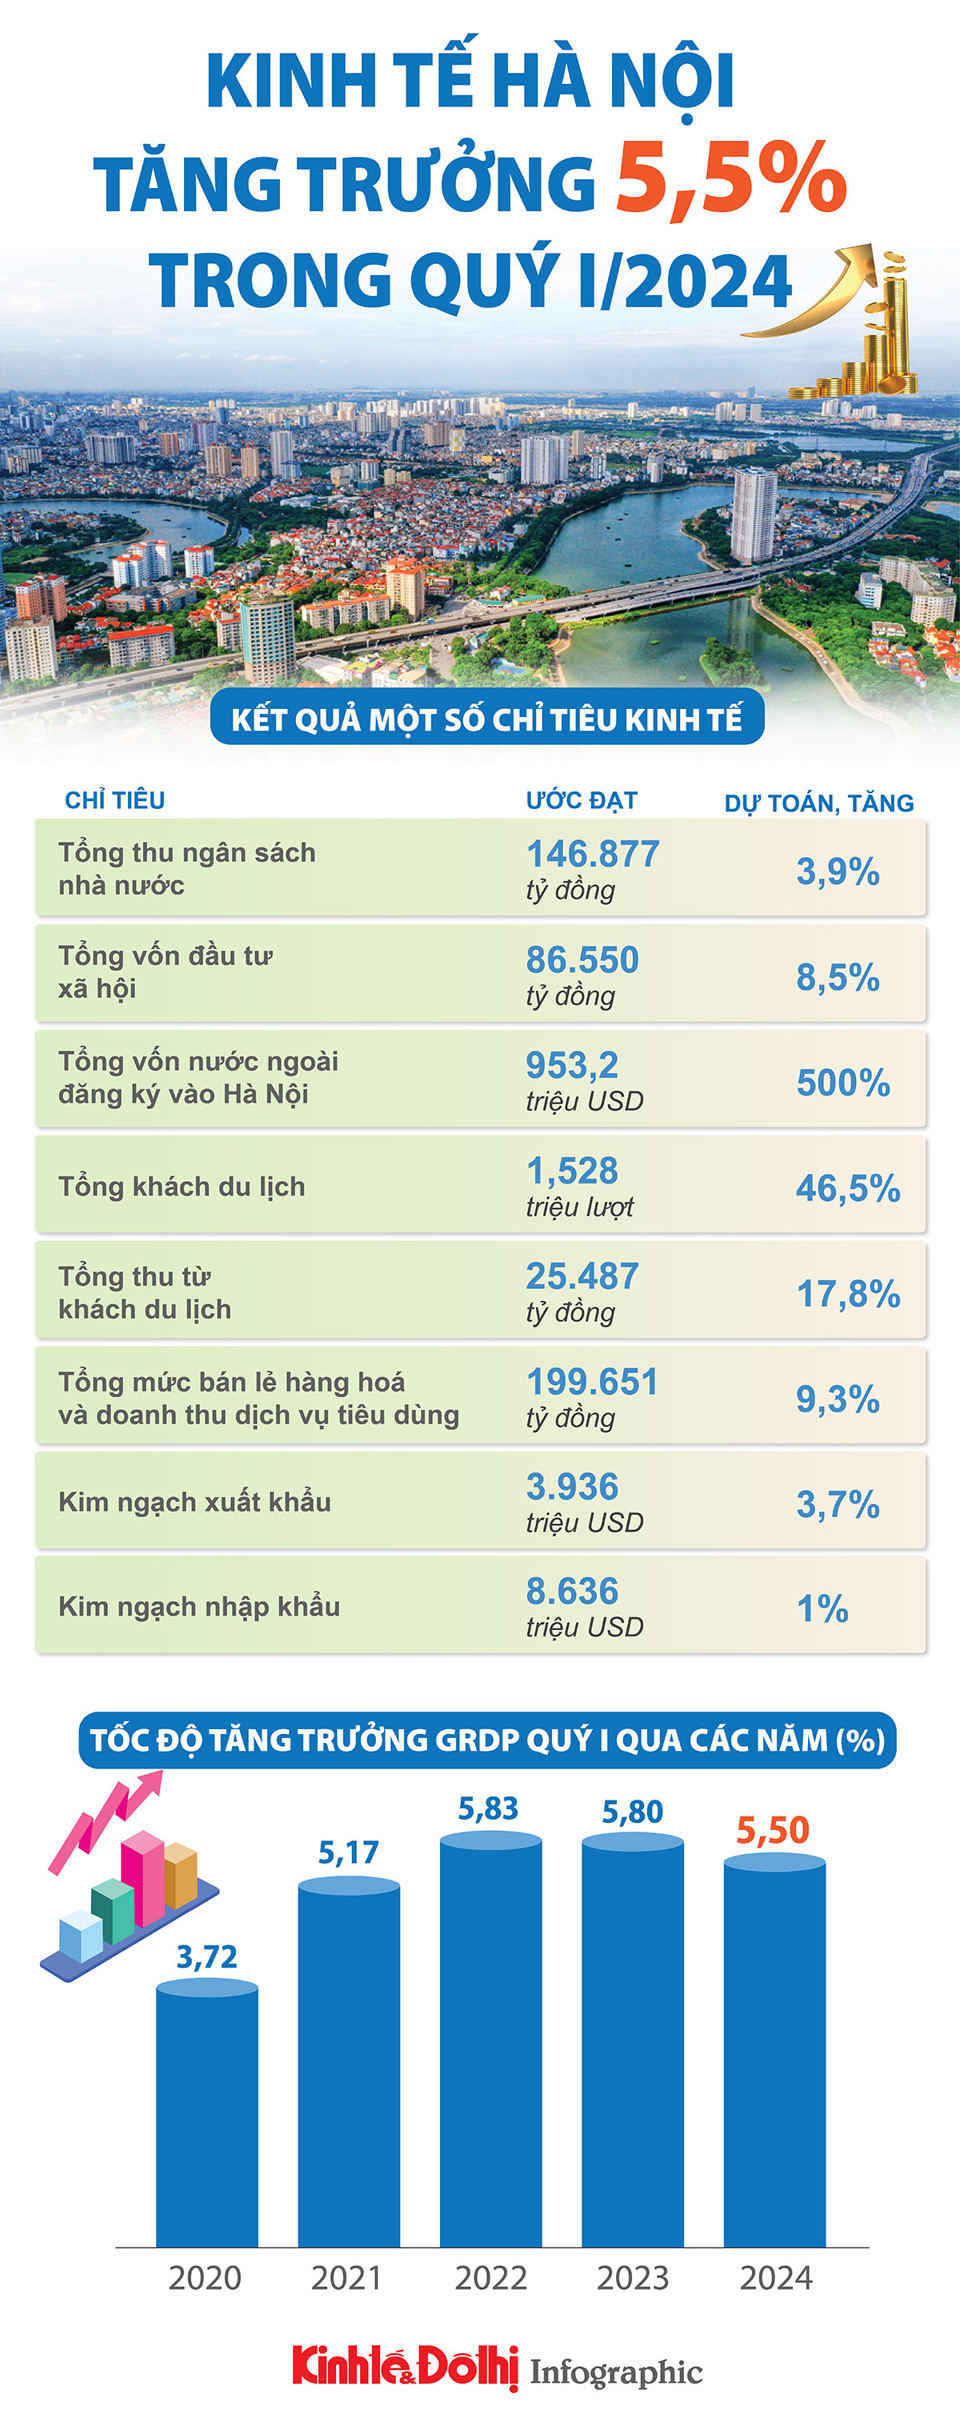 Kinh tế Hà Nội tăng trưởng 5,5% trong quý I/2024 - Ảnh 1